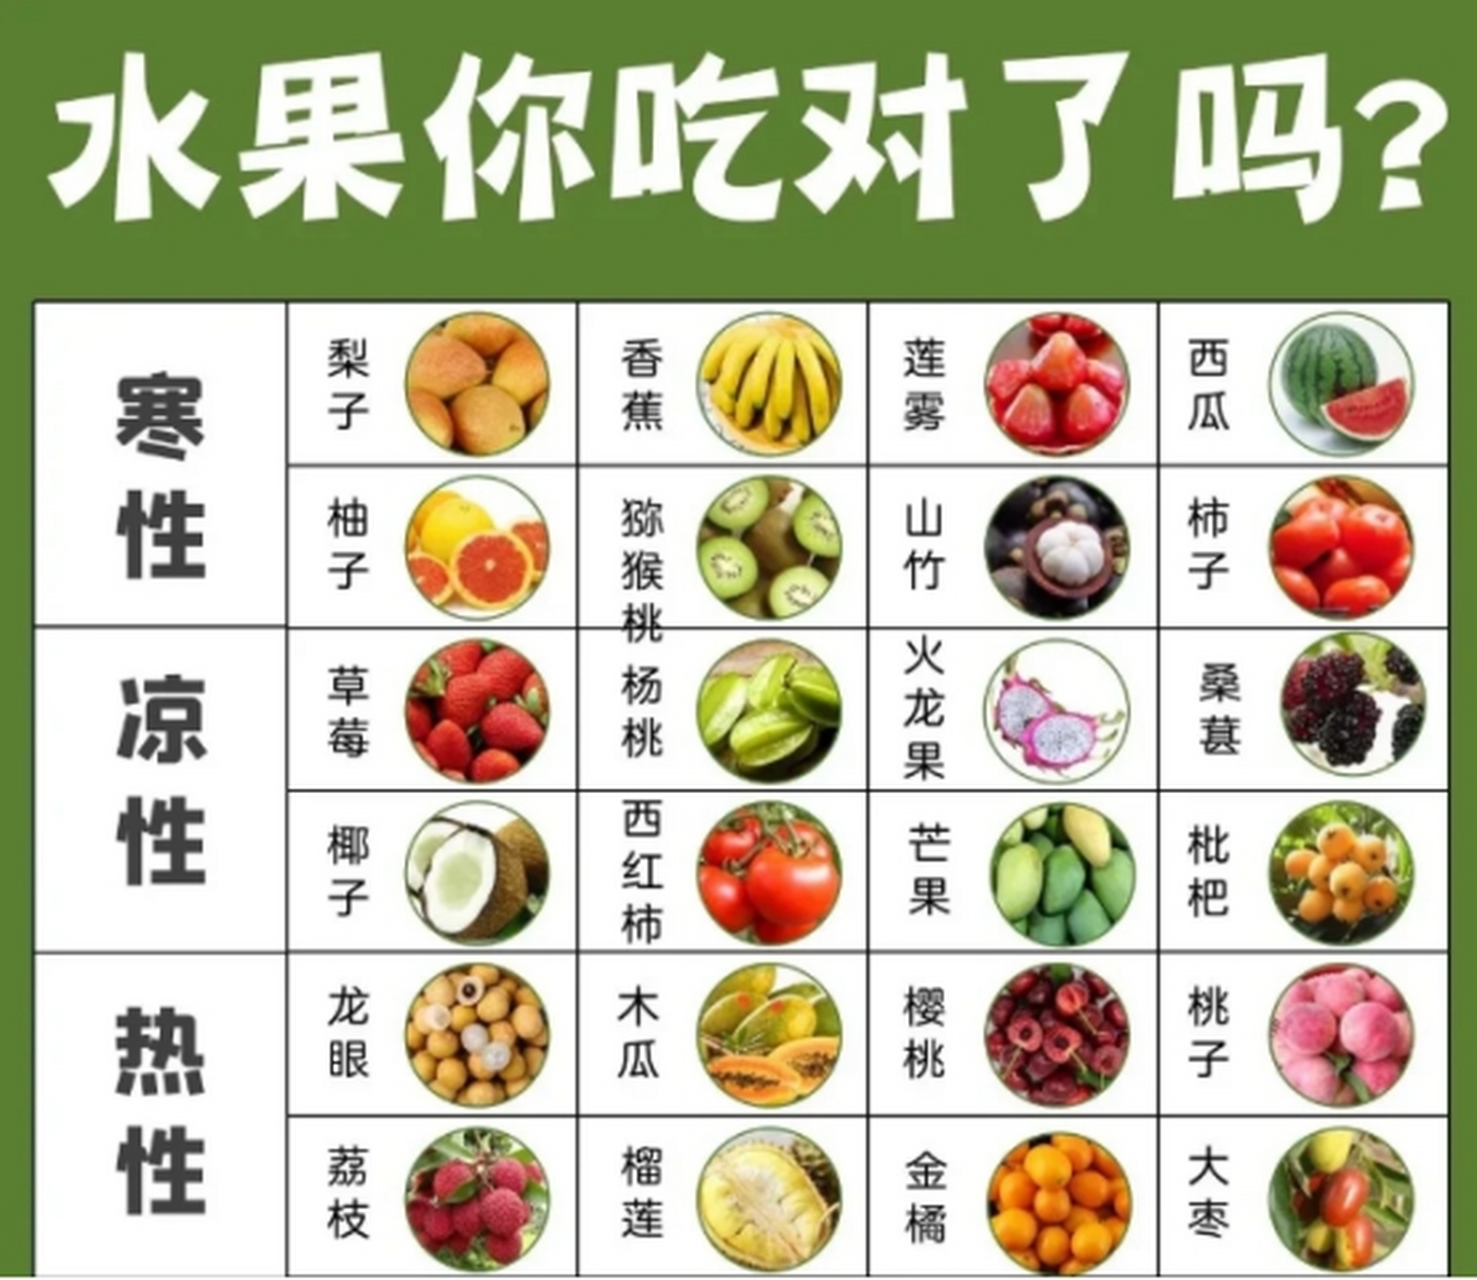 这几种寒性水果经常吃,凉性水果可以降火,但是肠胃虚弱的人要少吃.